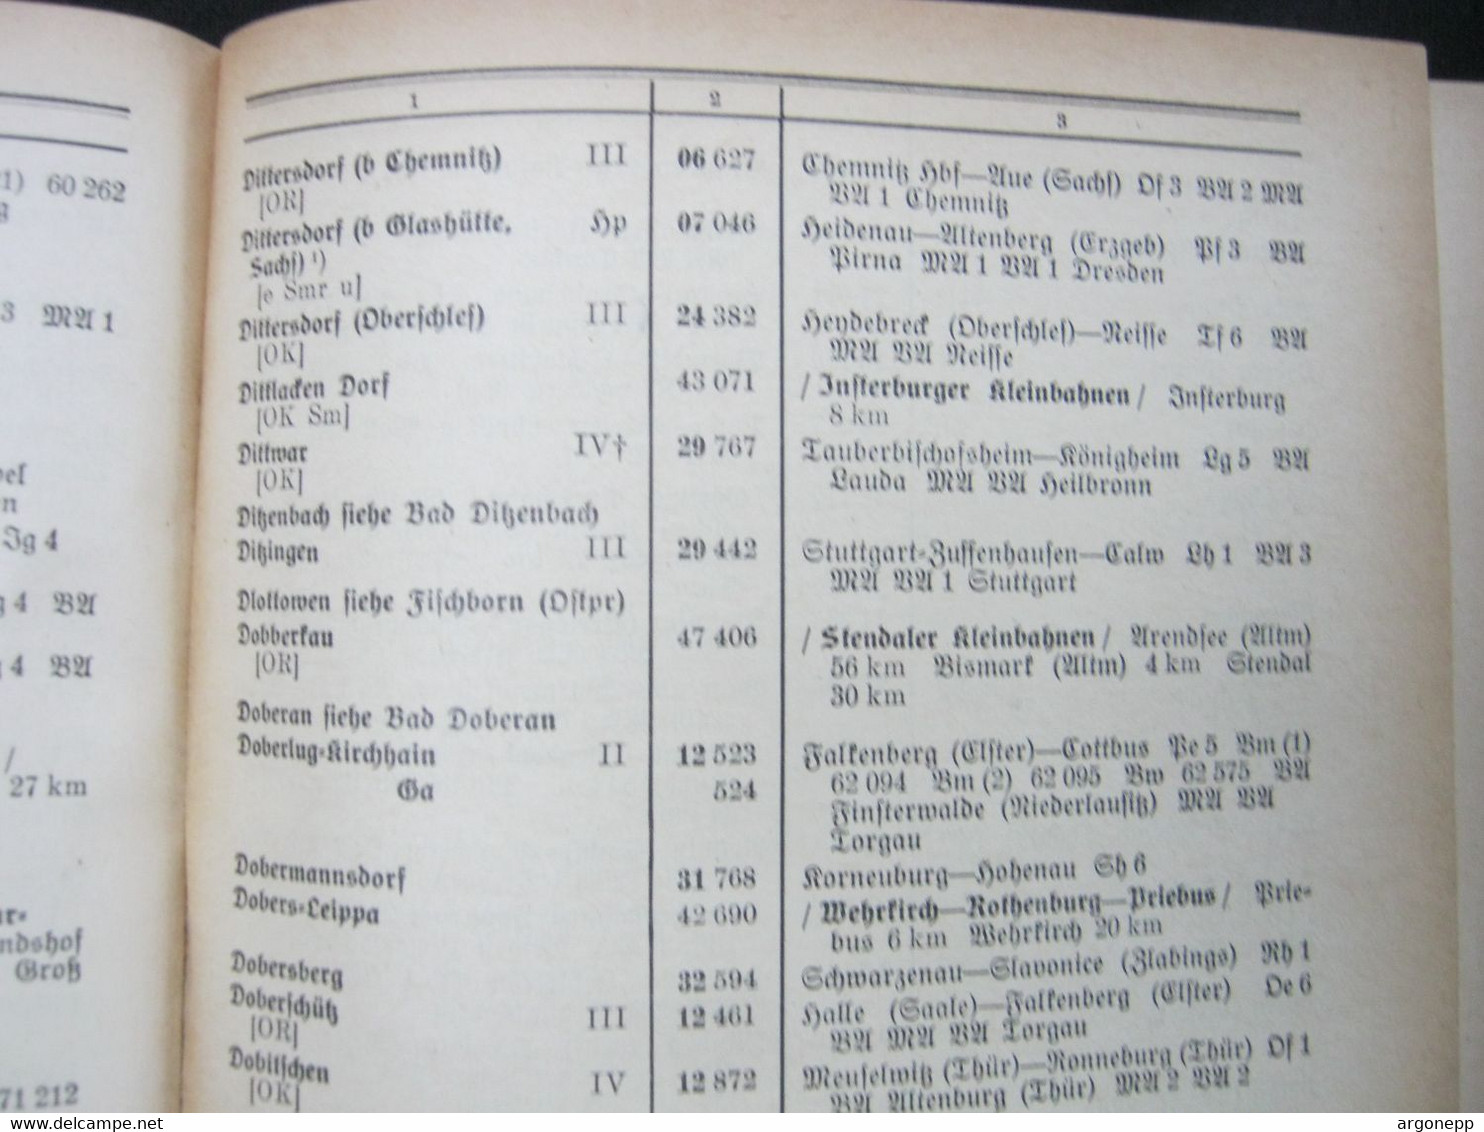 EISENBAHN ,DEUTSCHE REICHSBAHN ,   Amtliches Bahnhofverzeichnis 1938 , 946 Seiten , Mit Ostgebieten - Transport